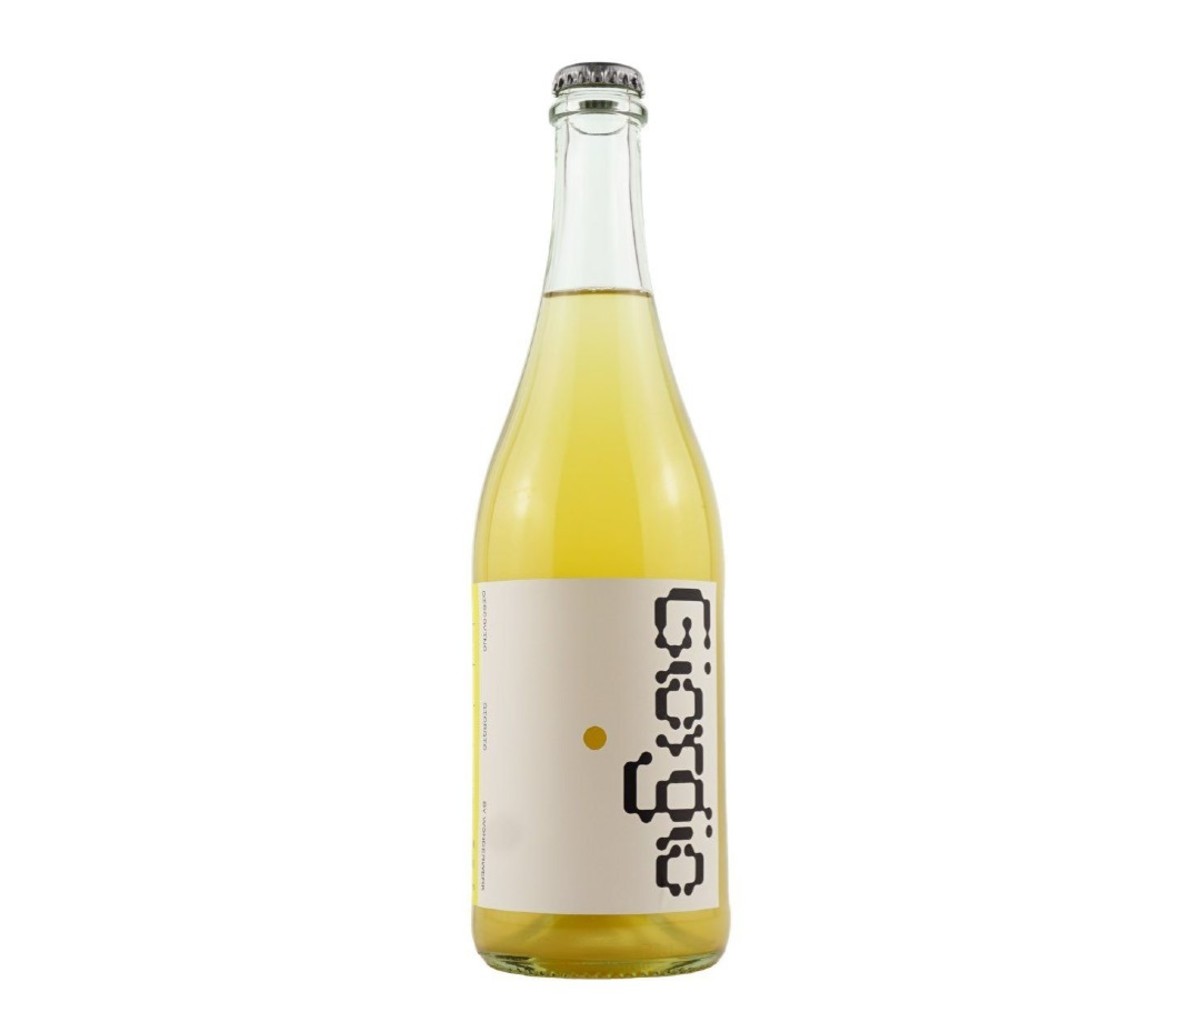 A bottle of Wonderwerk Giorgio Riesling Pet-Nat wine.